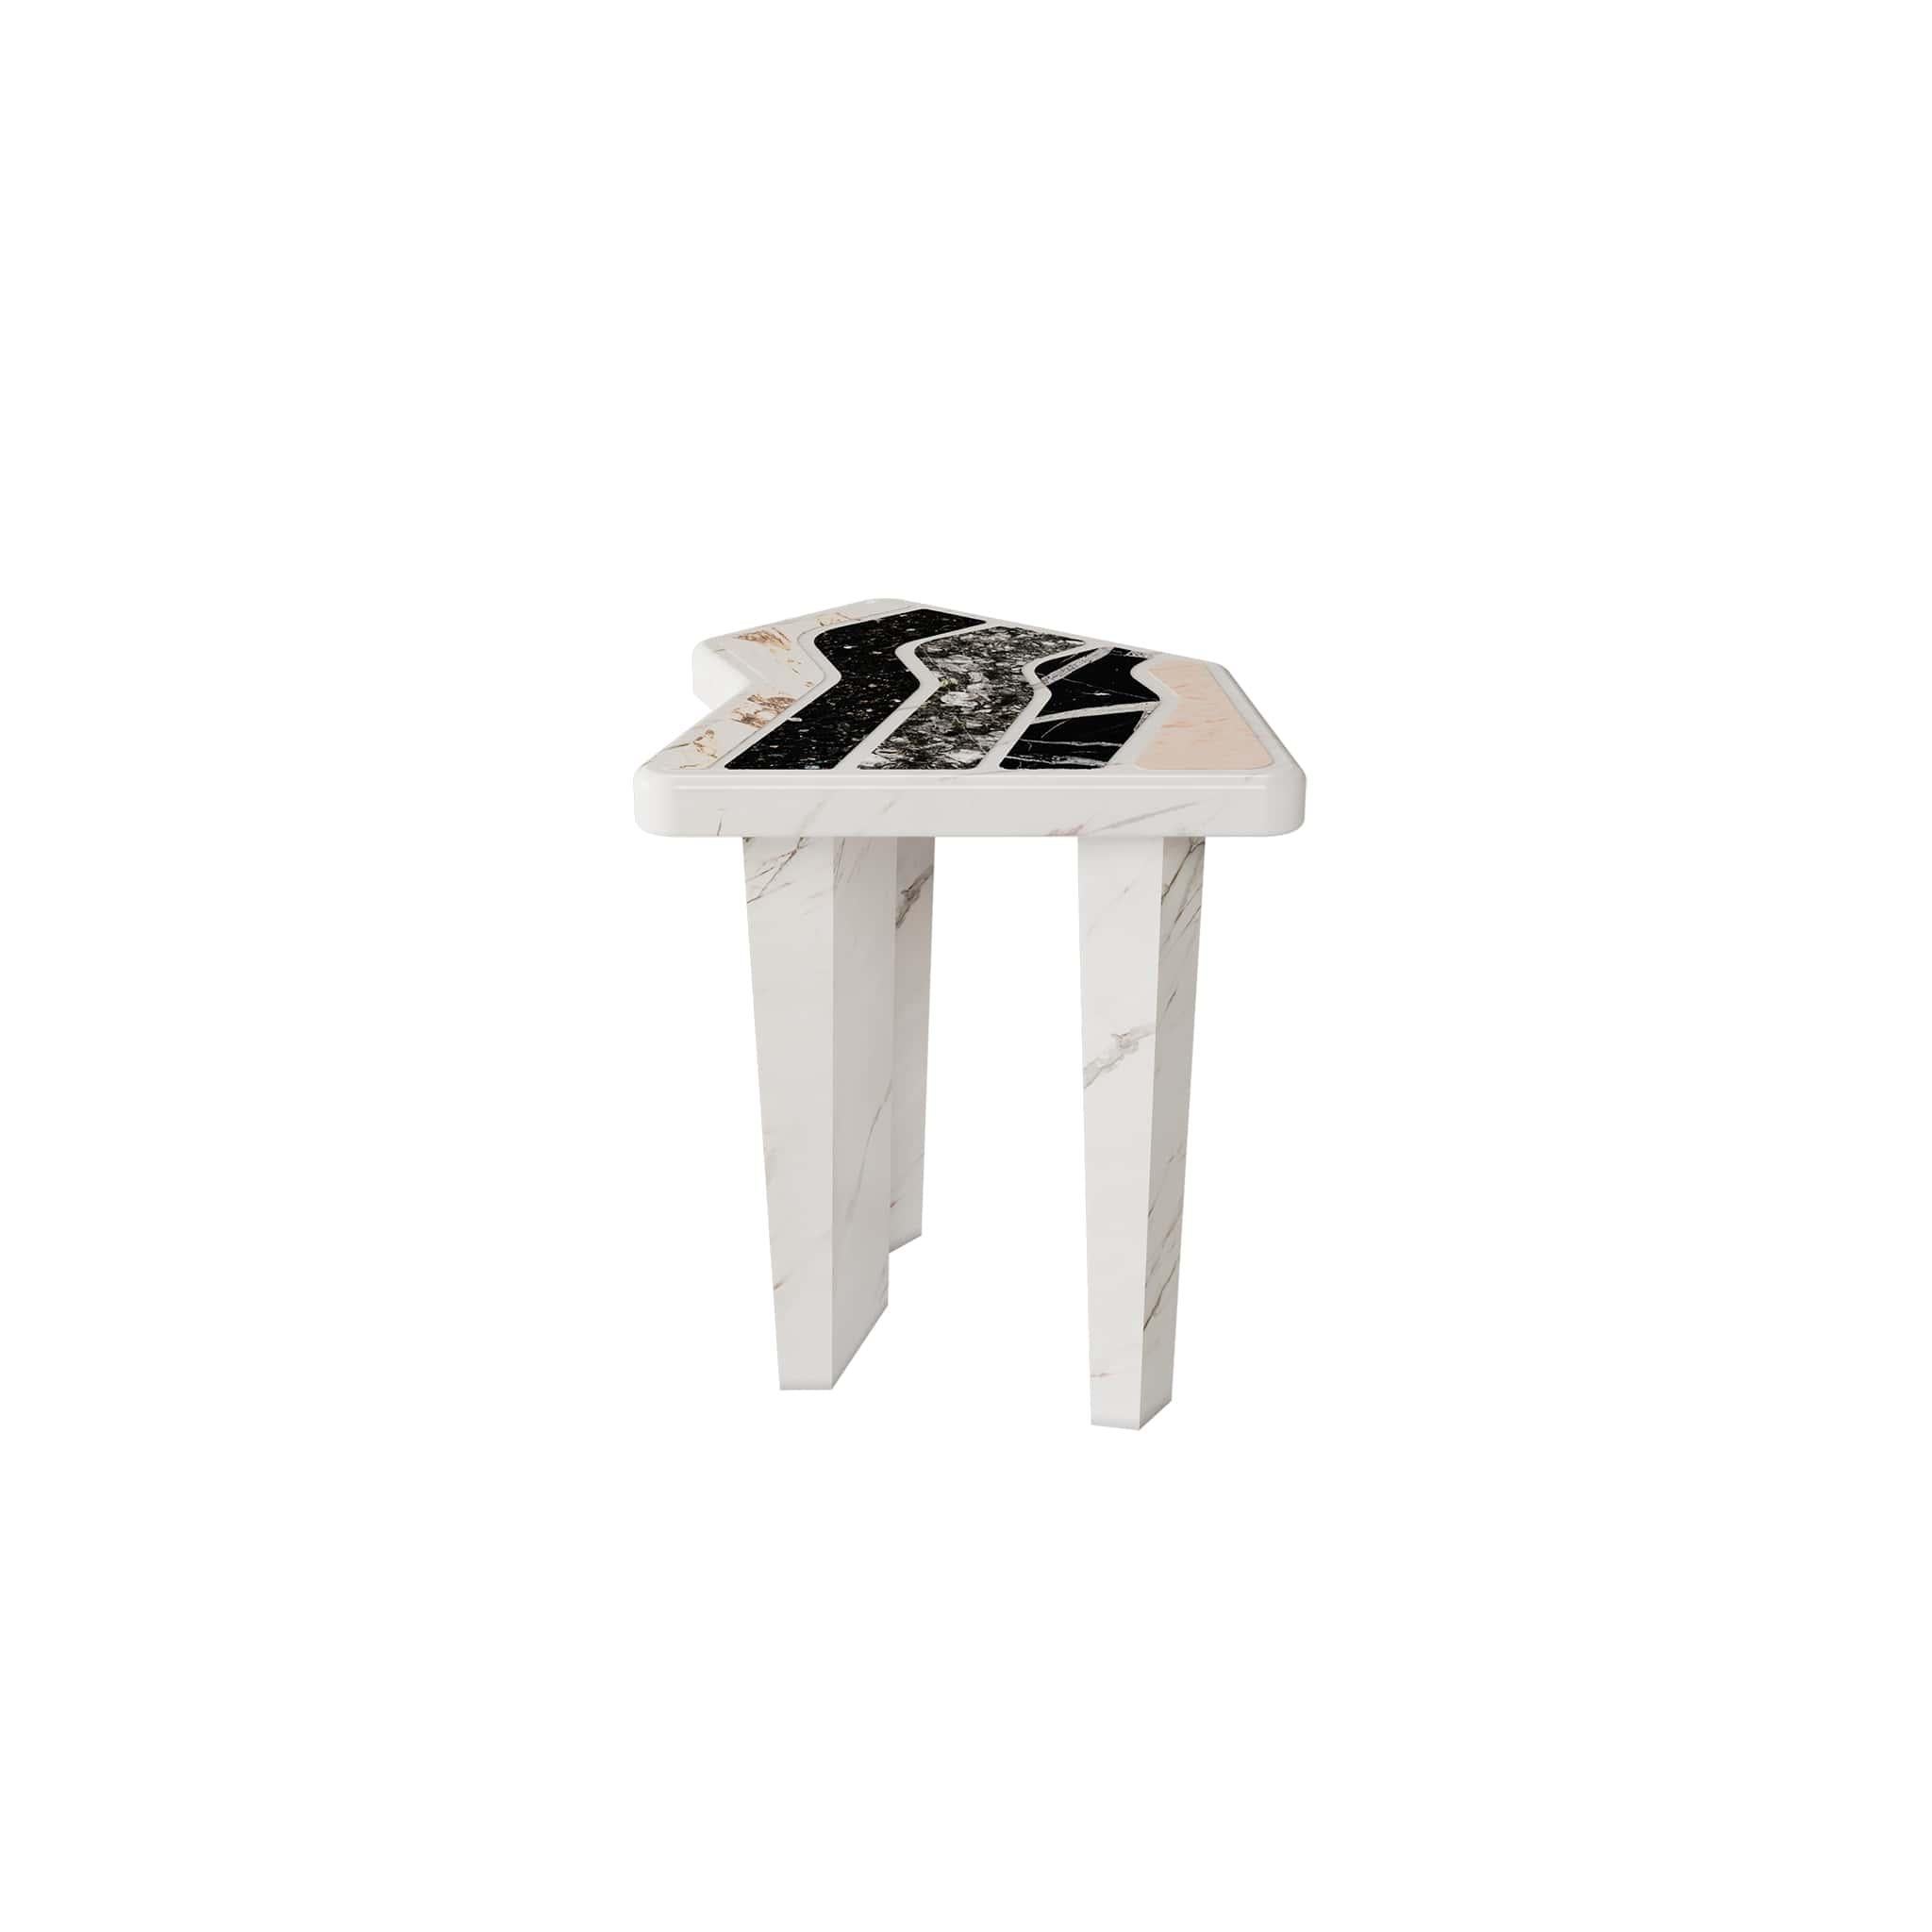 Table d'appoint contemporaine de forme géométrique Brutalist en granit et marbre.

Utah Side Table est une table de cocktail à la forme et à la beauté inattendues. Son corps est construit avec une composition riche en risques de marbre et de